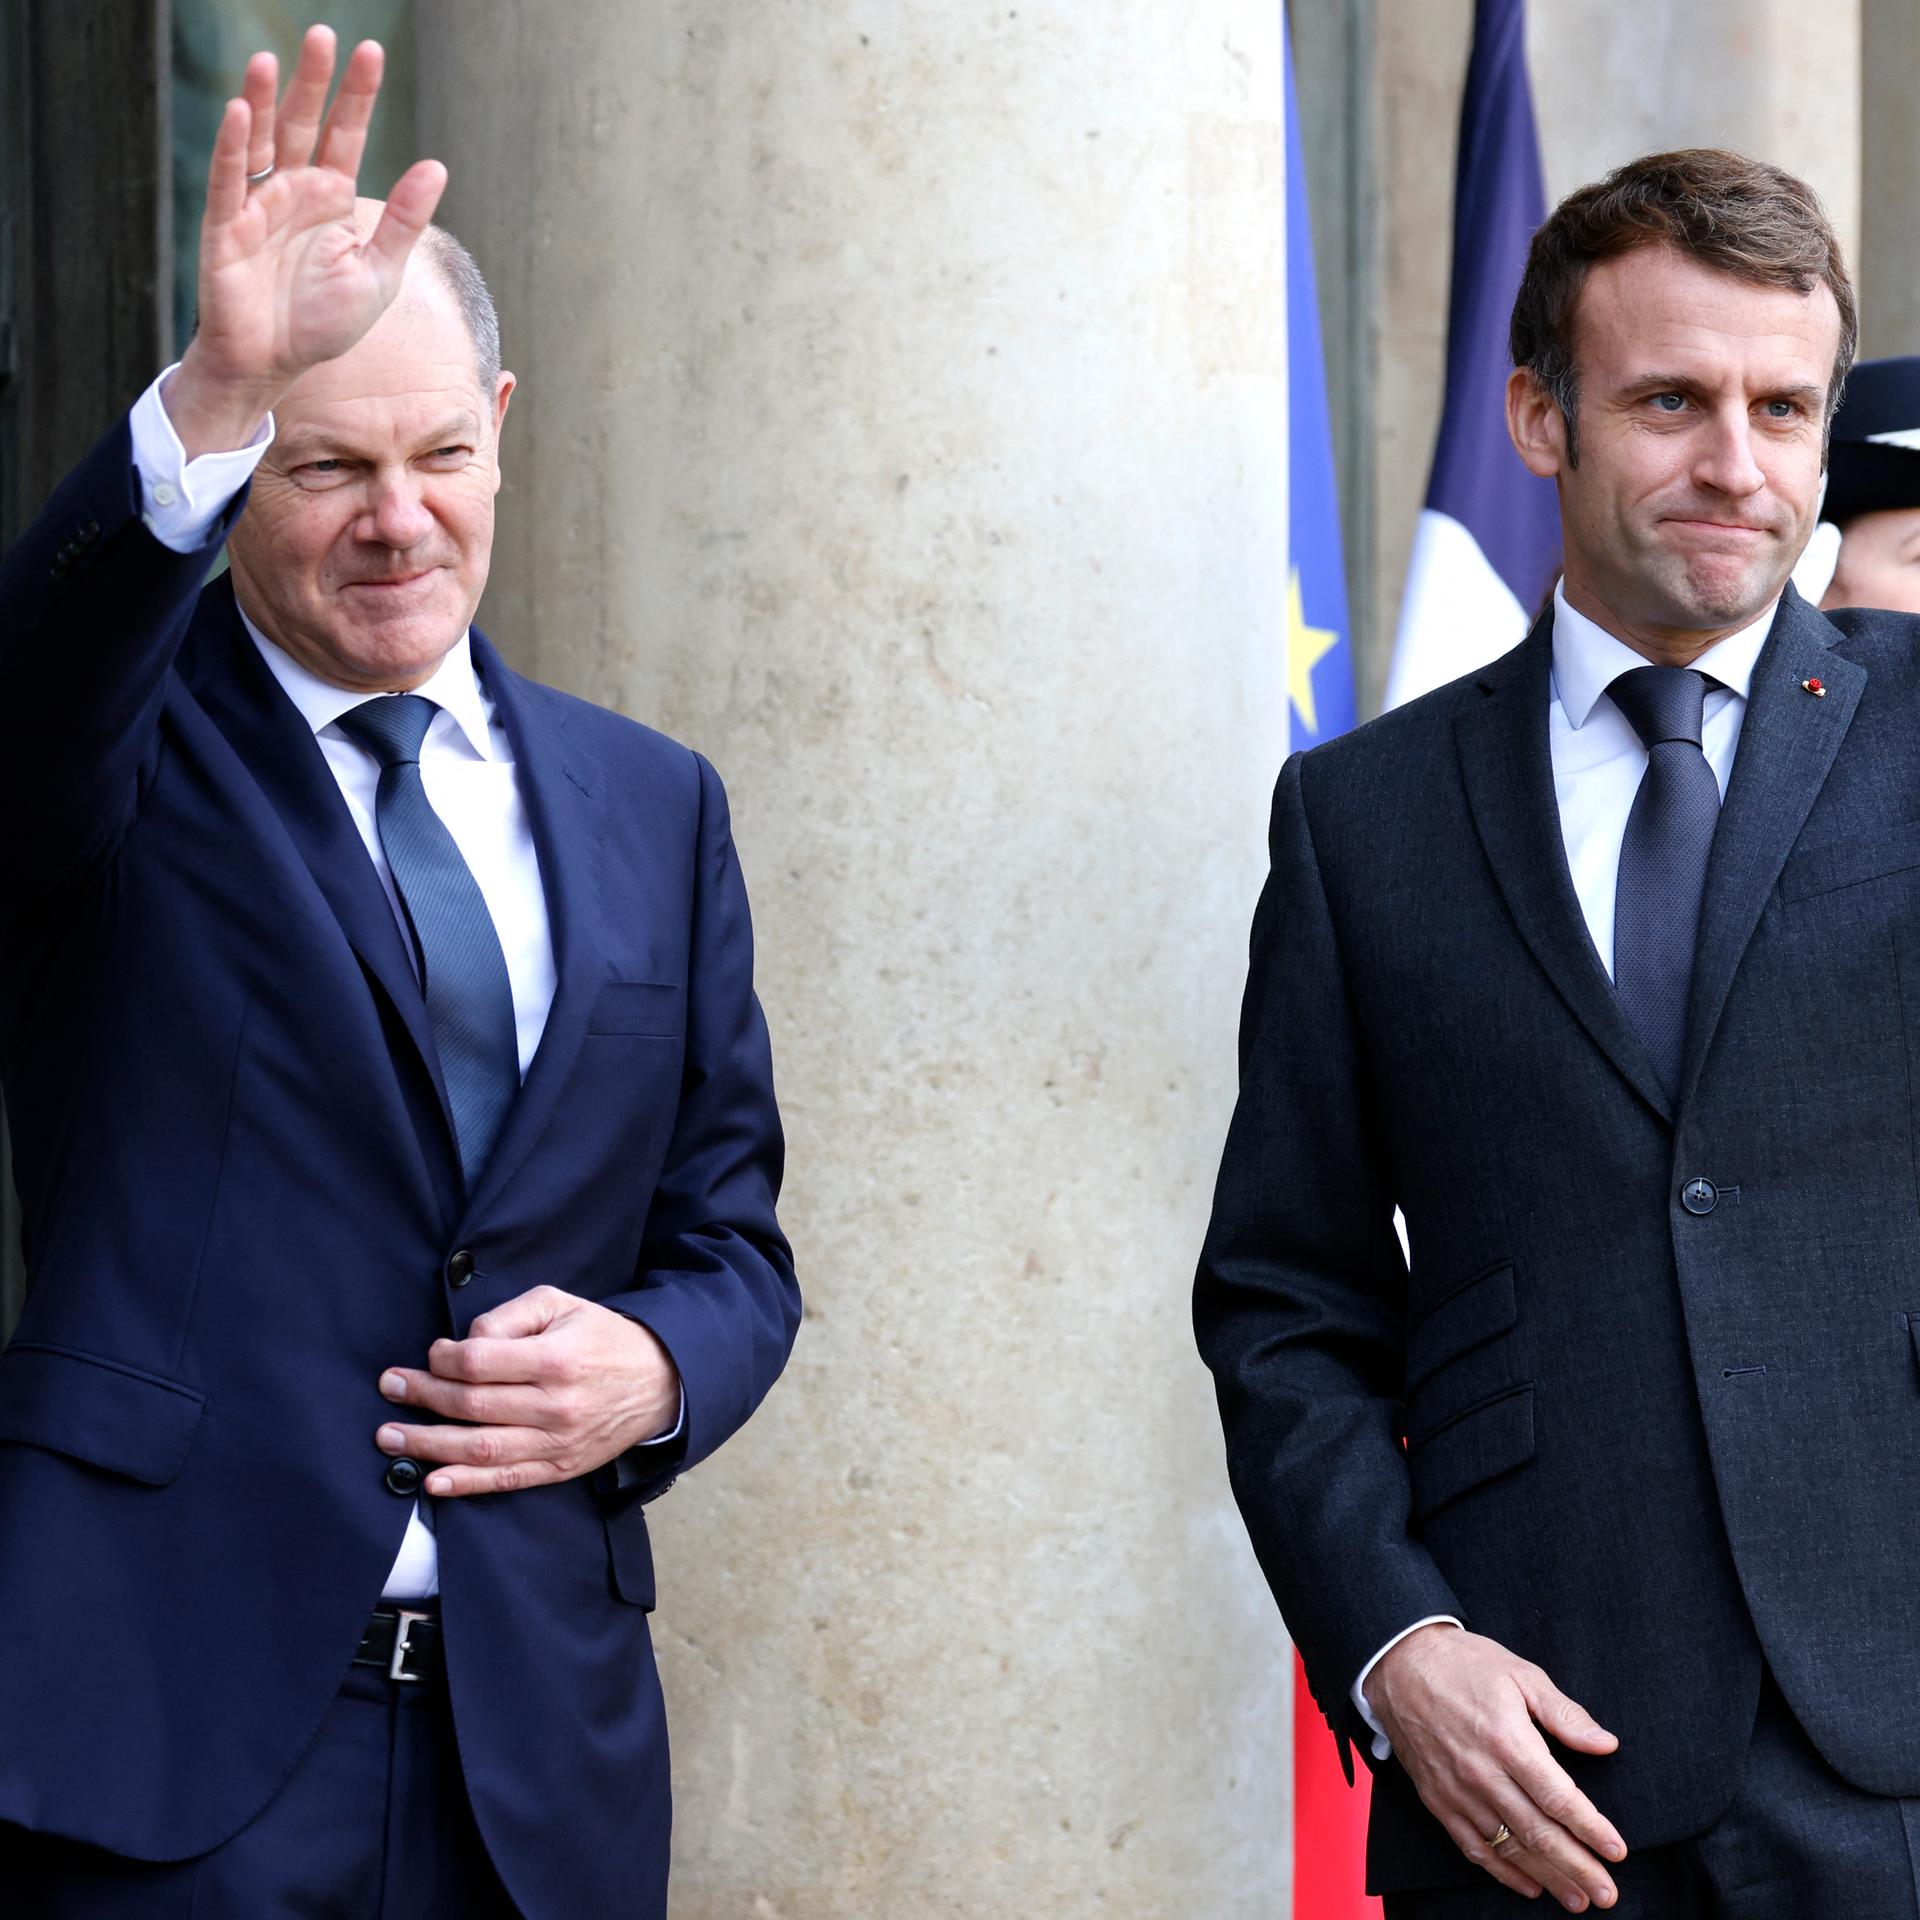 Bundeskanzler Olaf Scholz bei seinem Antrittsbesuch bei Frankreichs Staatschef Emmanuel Macron in Paris